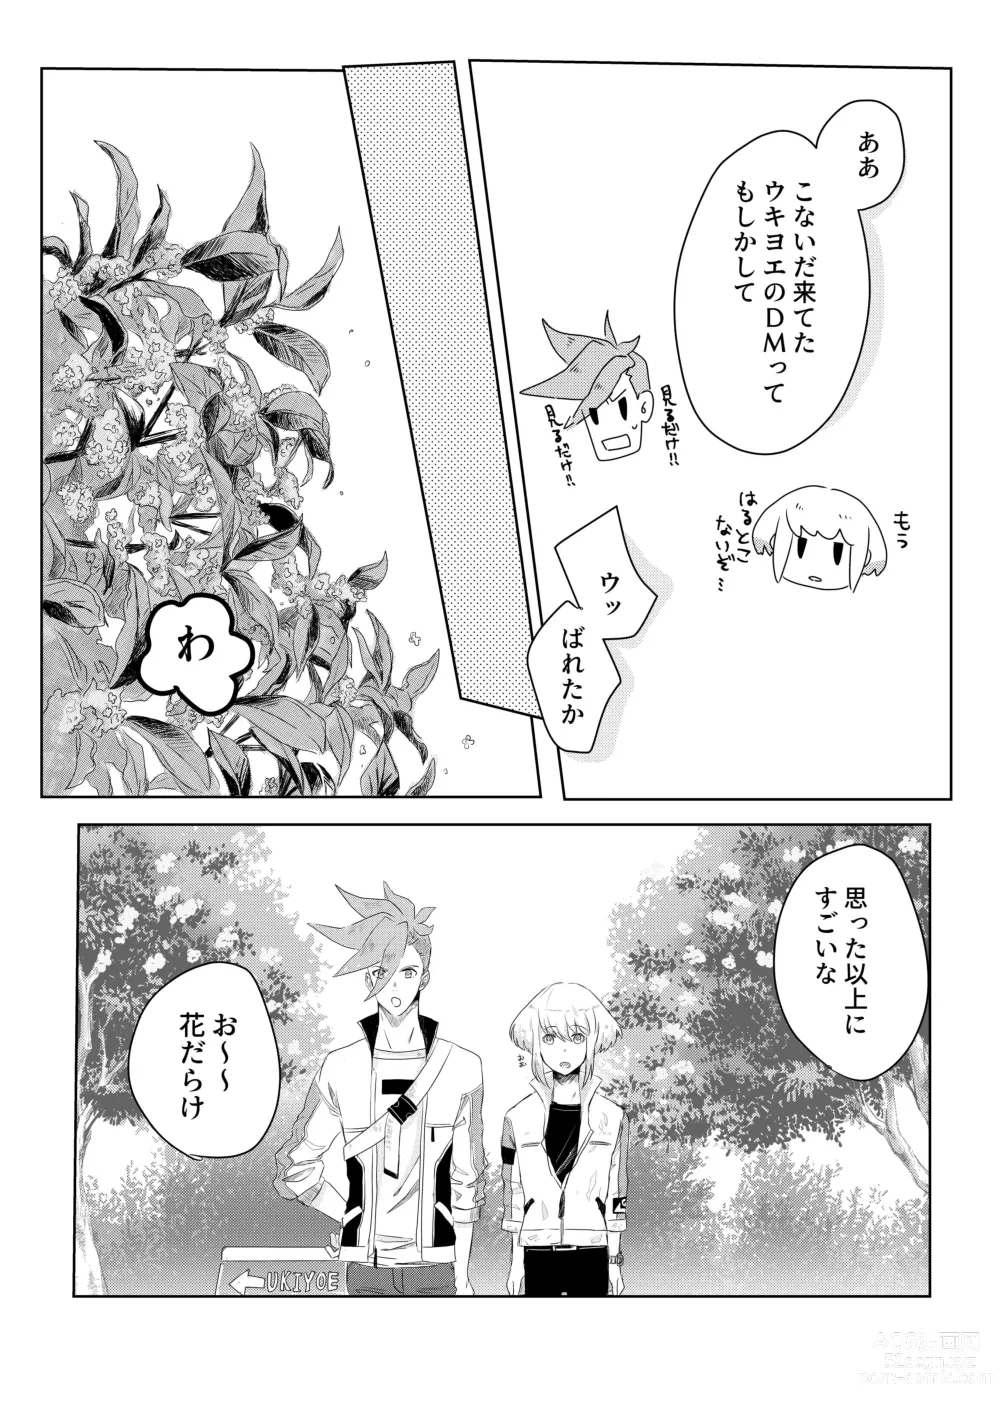 Page 28 of doujinshi Ohayou, Oyasumi, Mata Ashita.